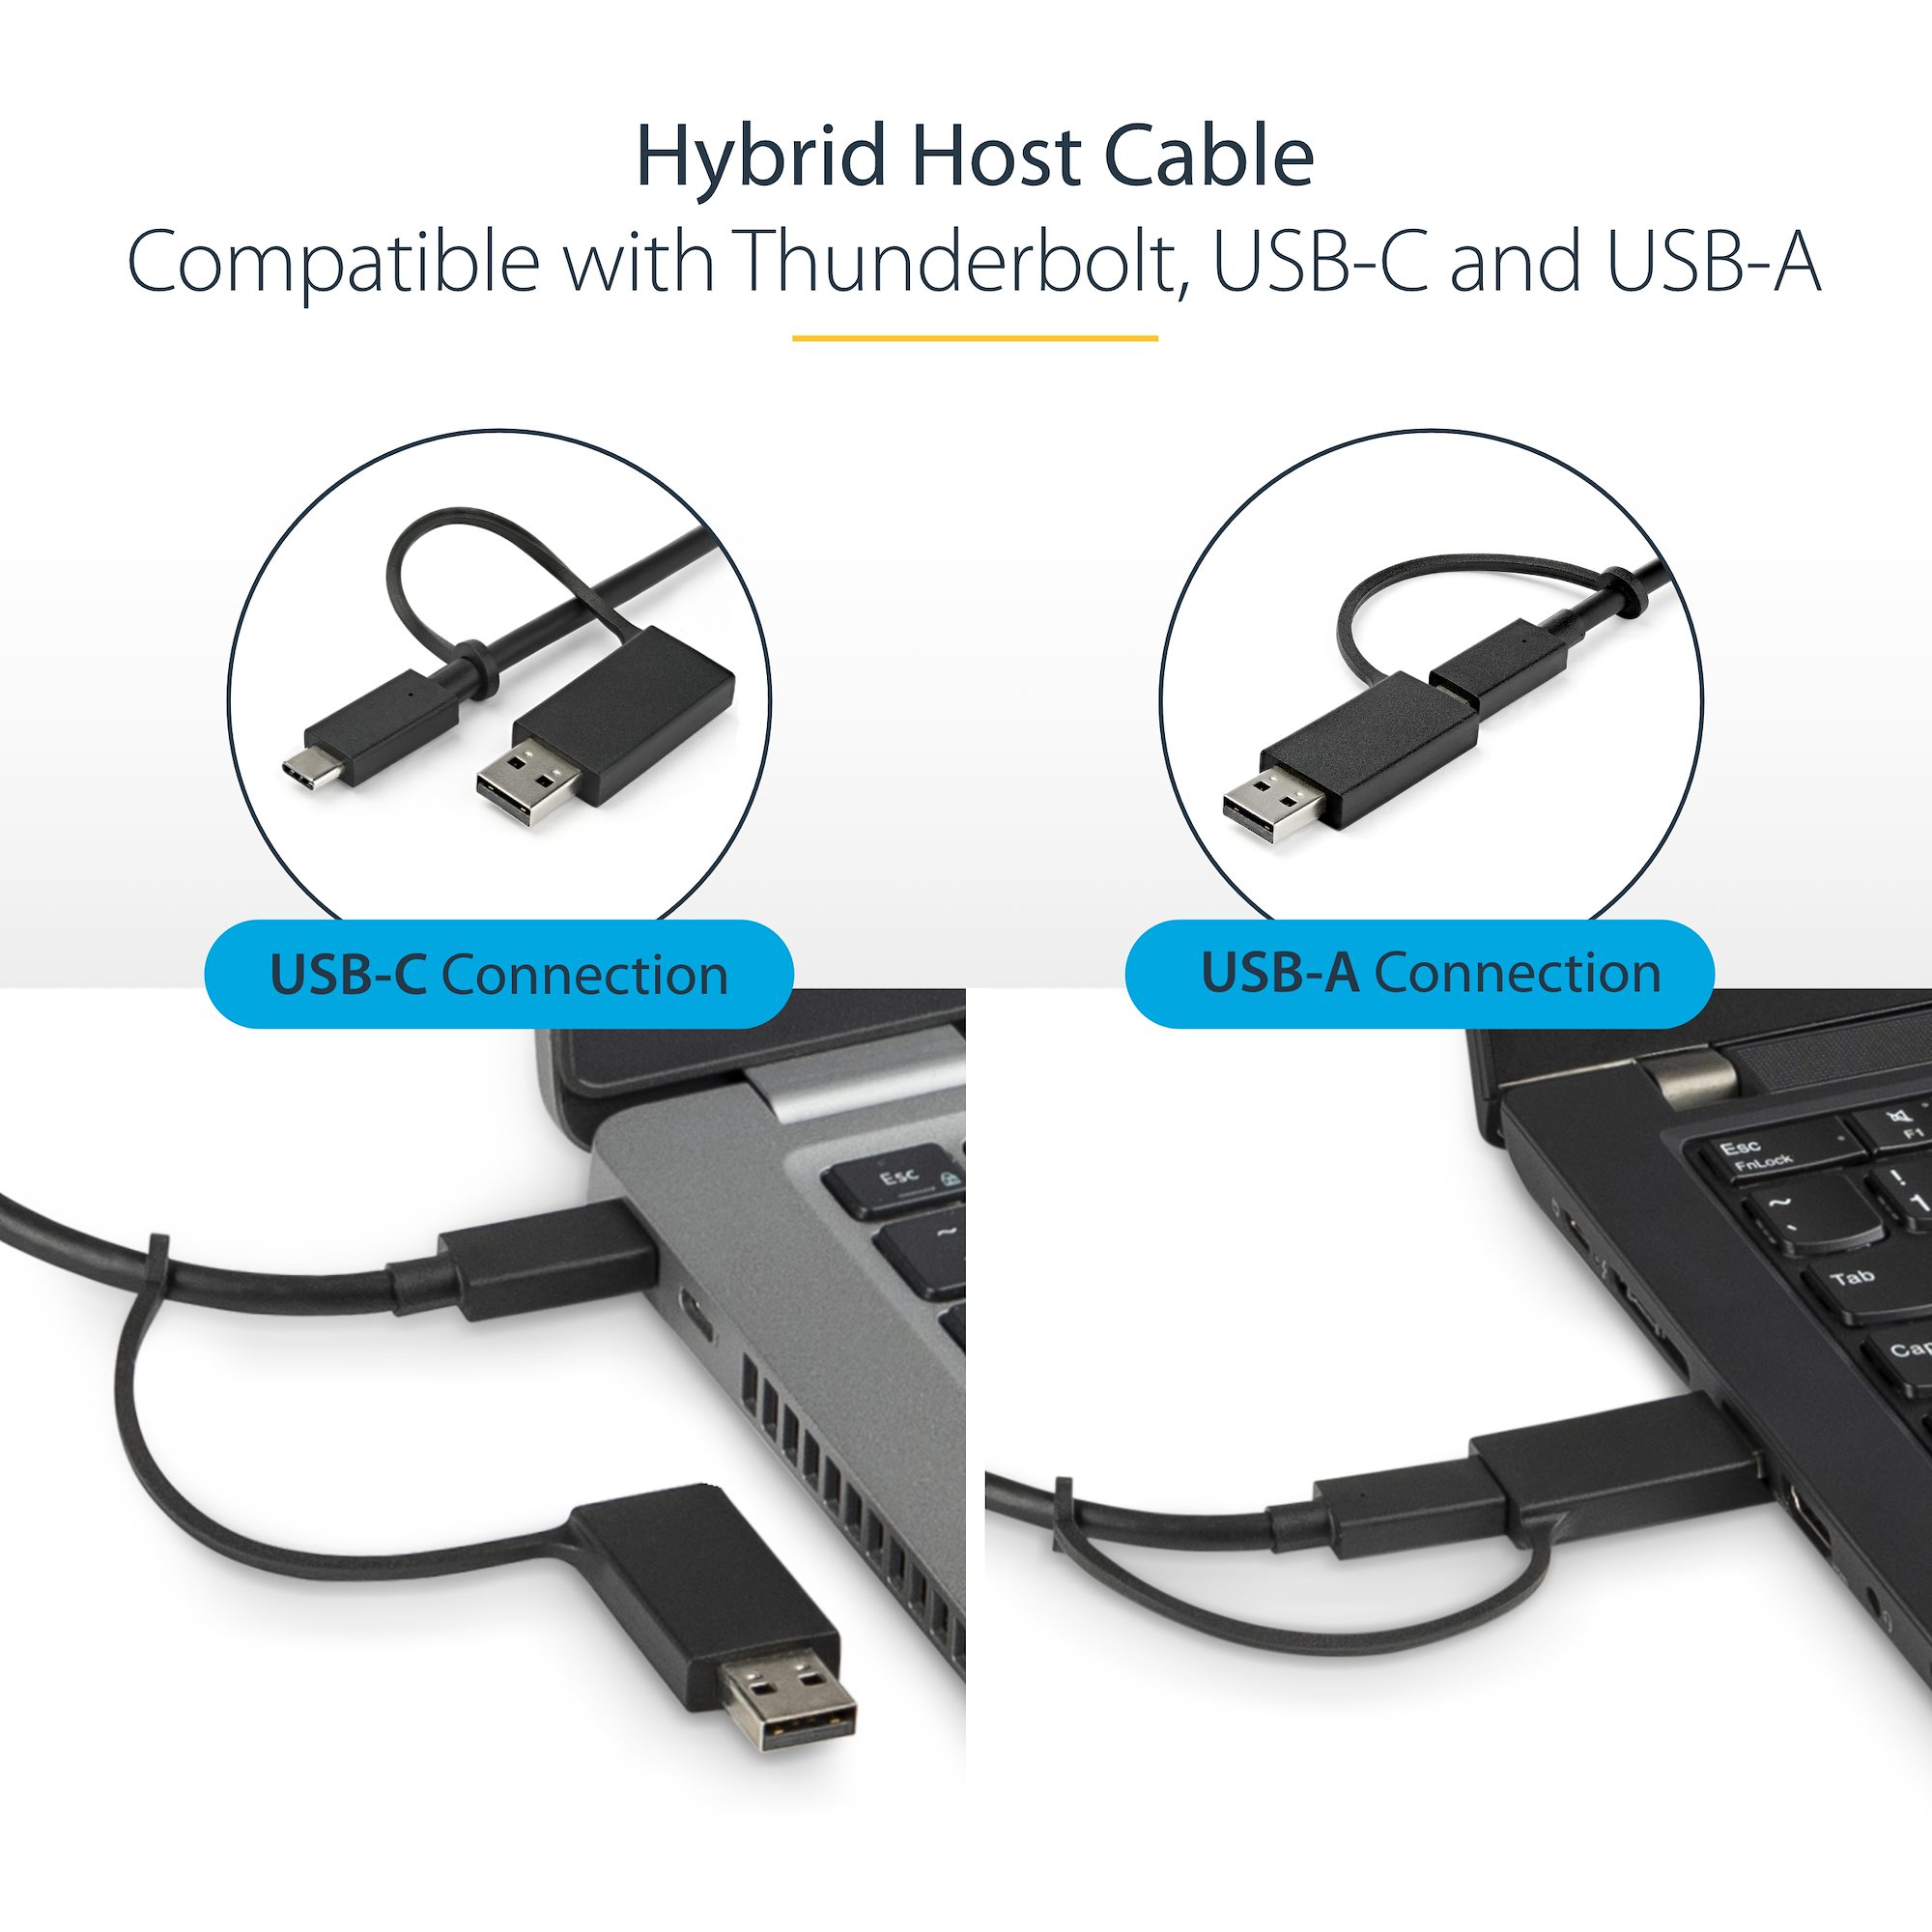 1 m USB-C-kabel med USB-A-adapterdongel - Hybrid 2-i-1 USB C-kabel med  USB-A - USB-C till USB-C (10 Gbps/100 W PD), USB-A till USB-C (5 Gbps) 